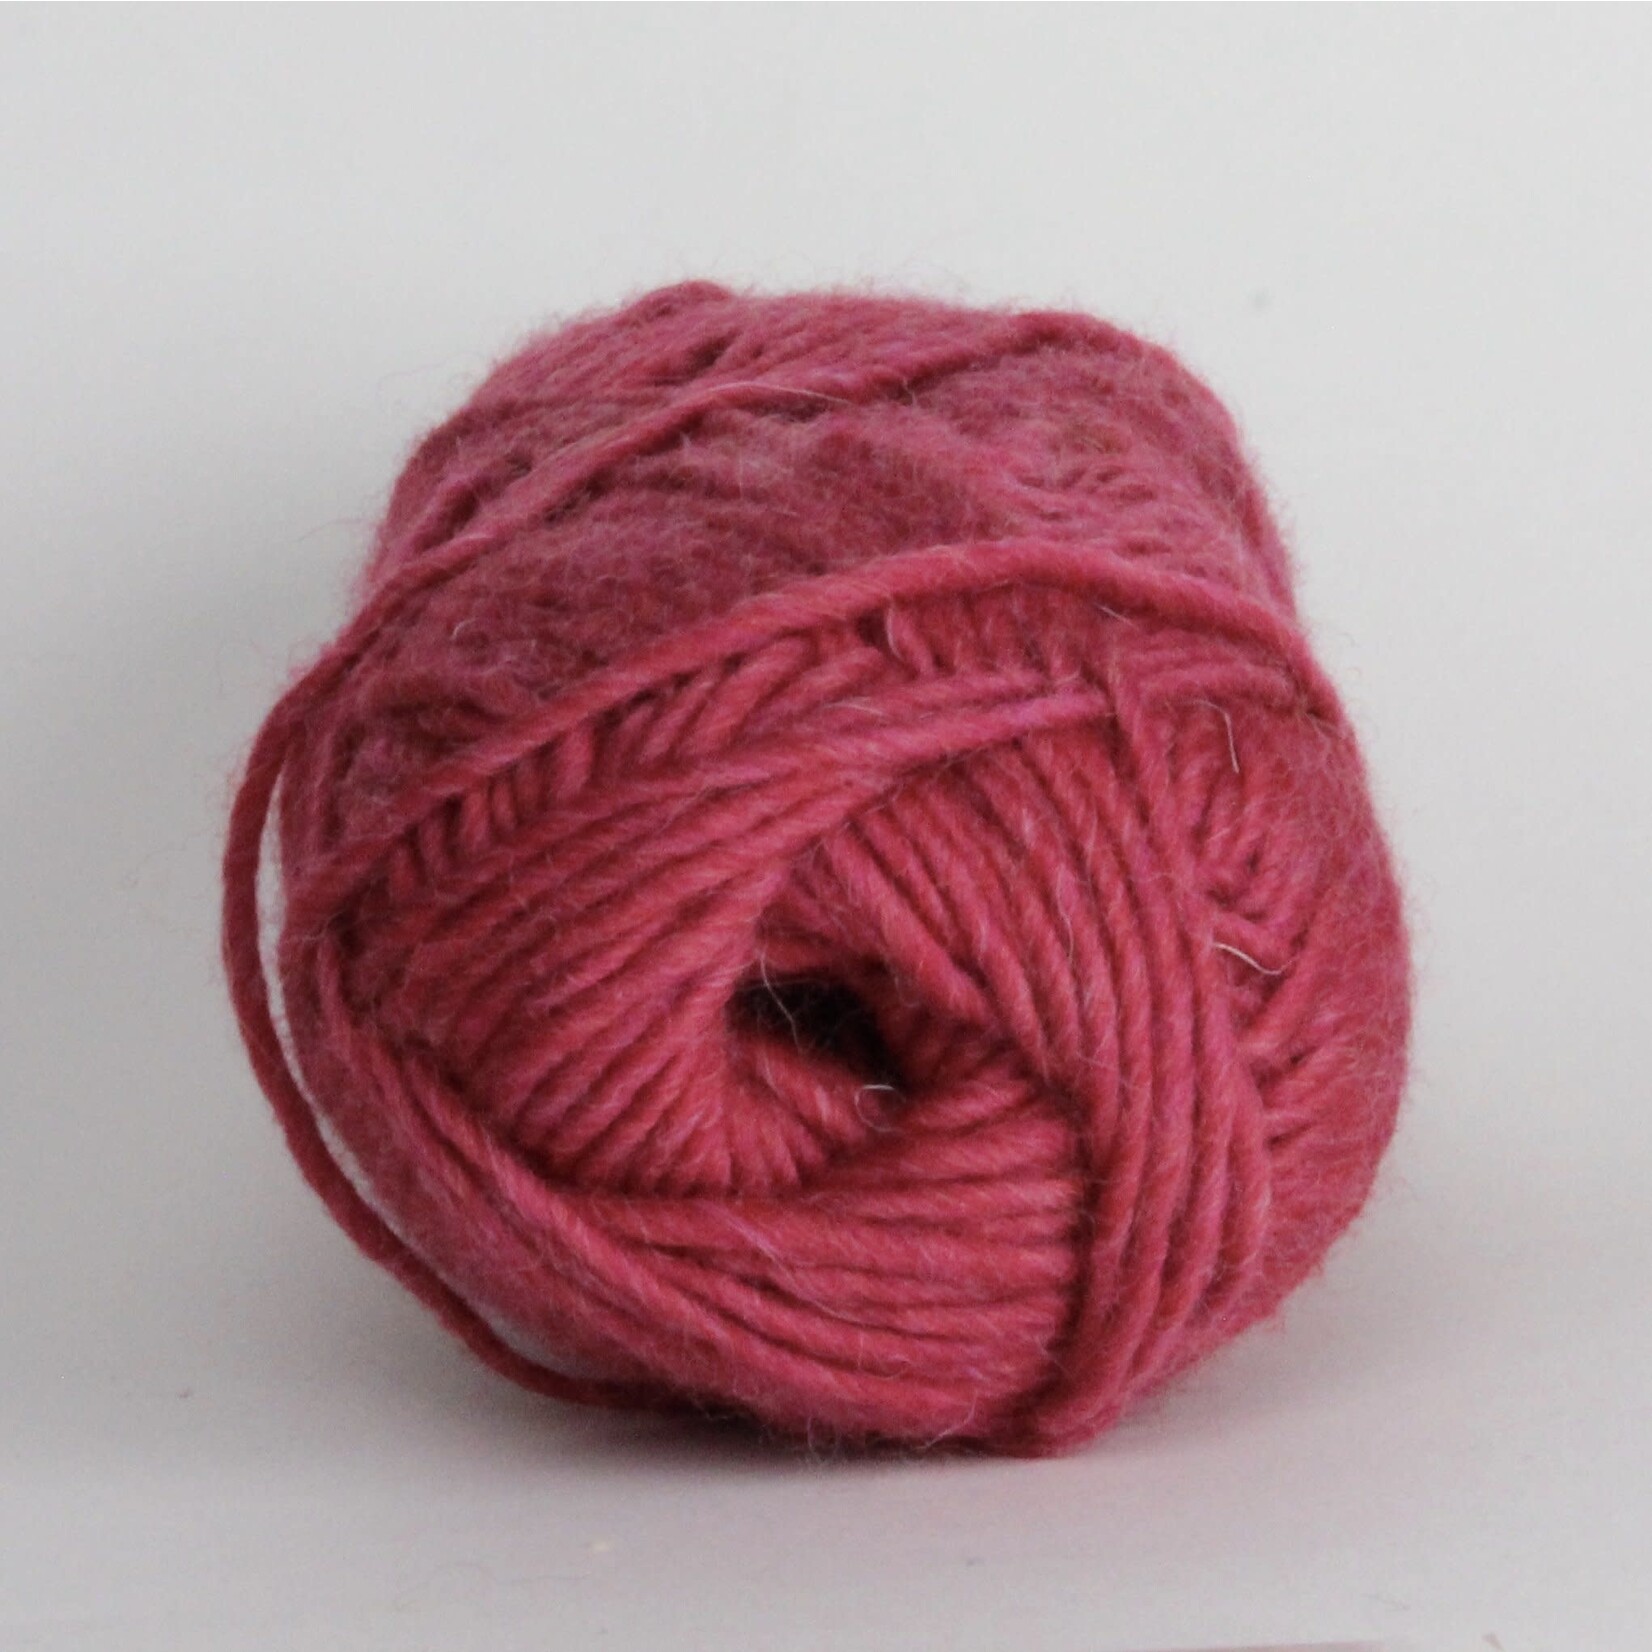 Kraemer Yarns Yarn - Mauch Chunky Rhubarb